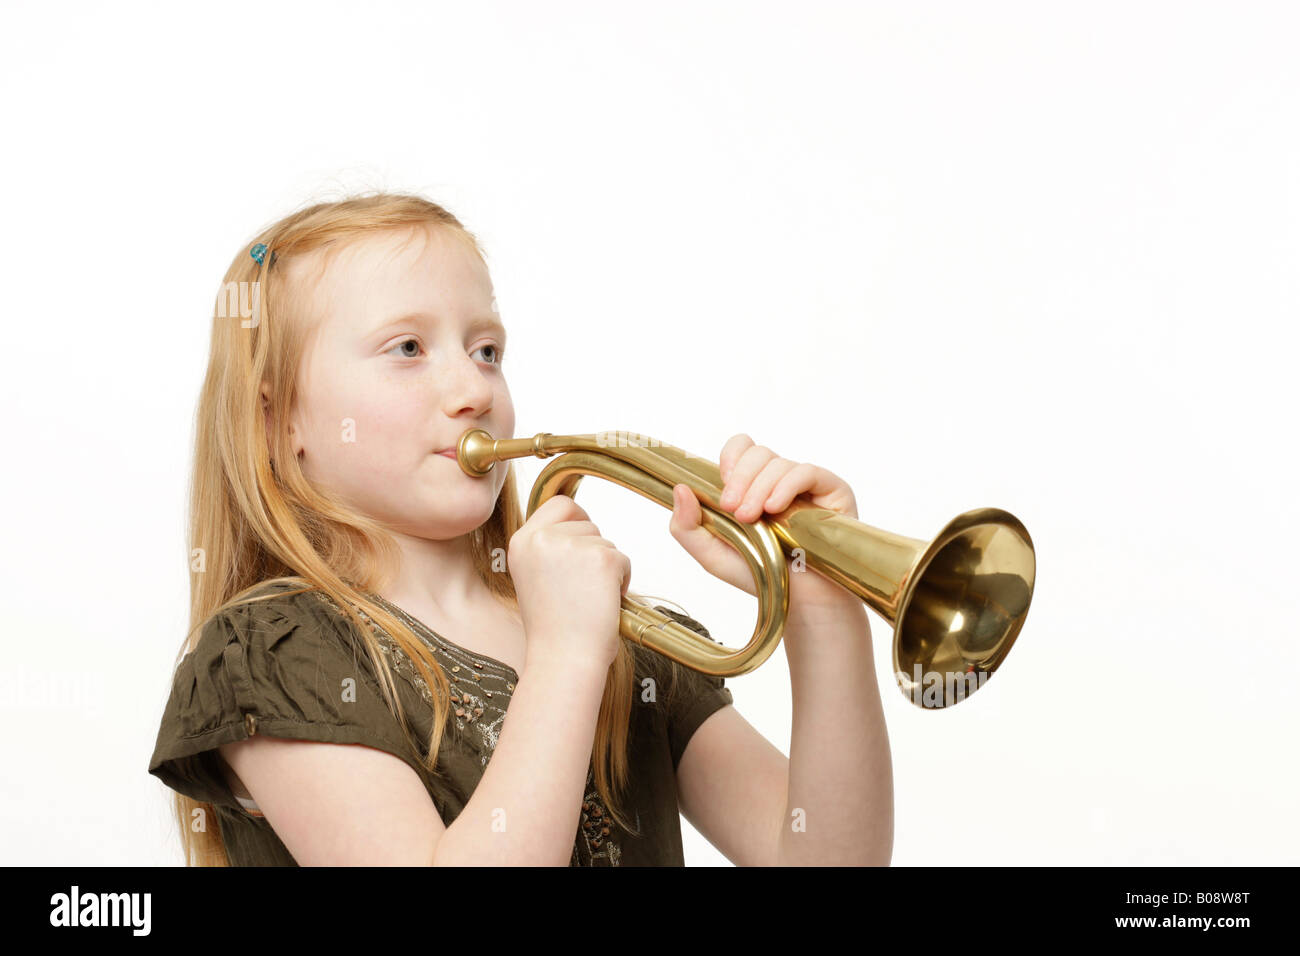 Rousse de 8 ans à jouer de la trompette Banque D'Images